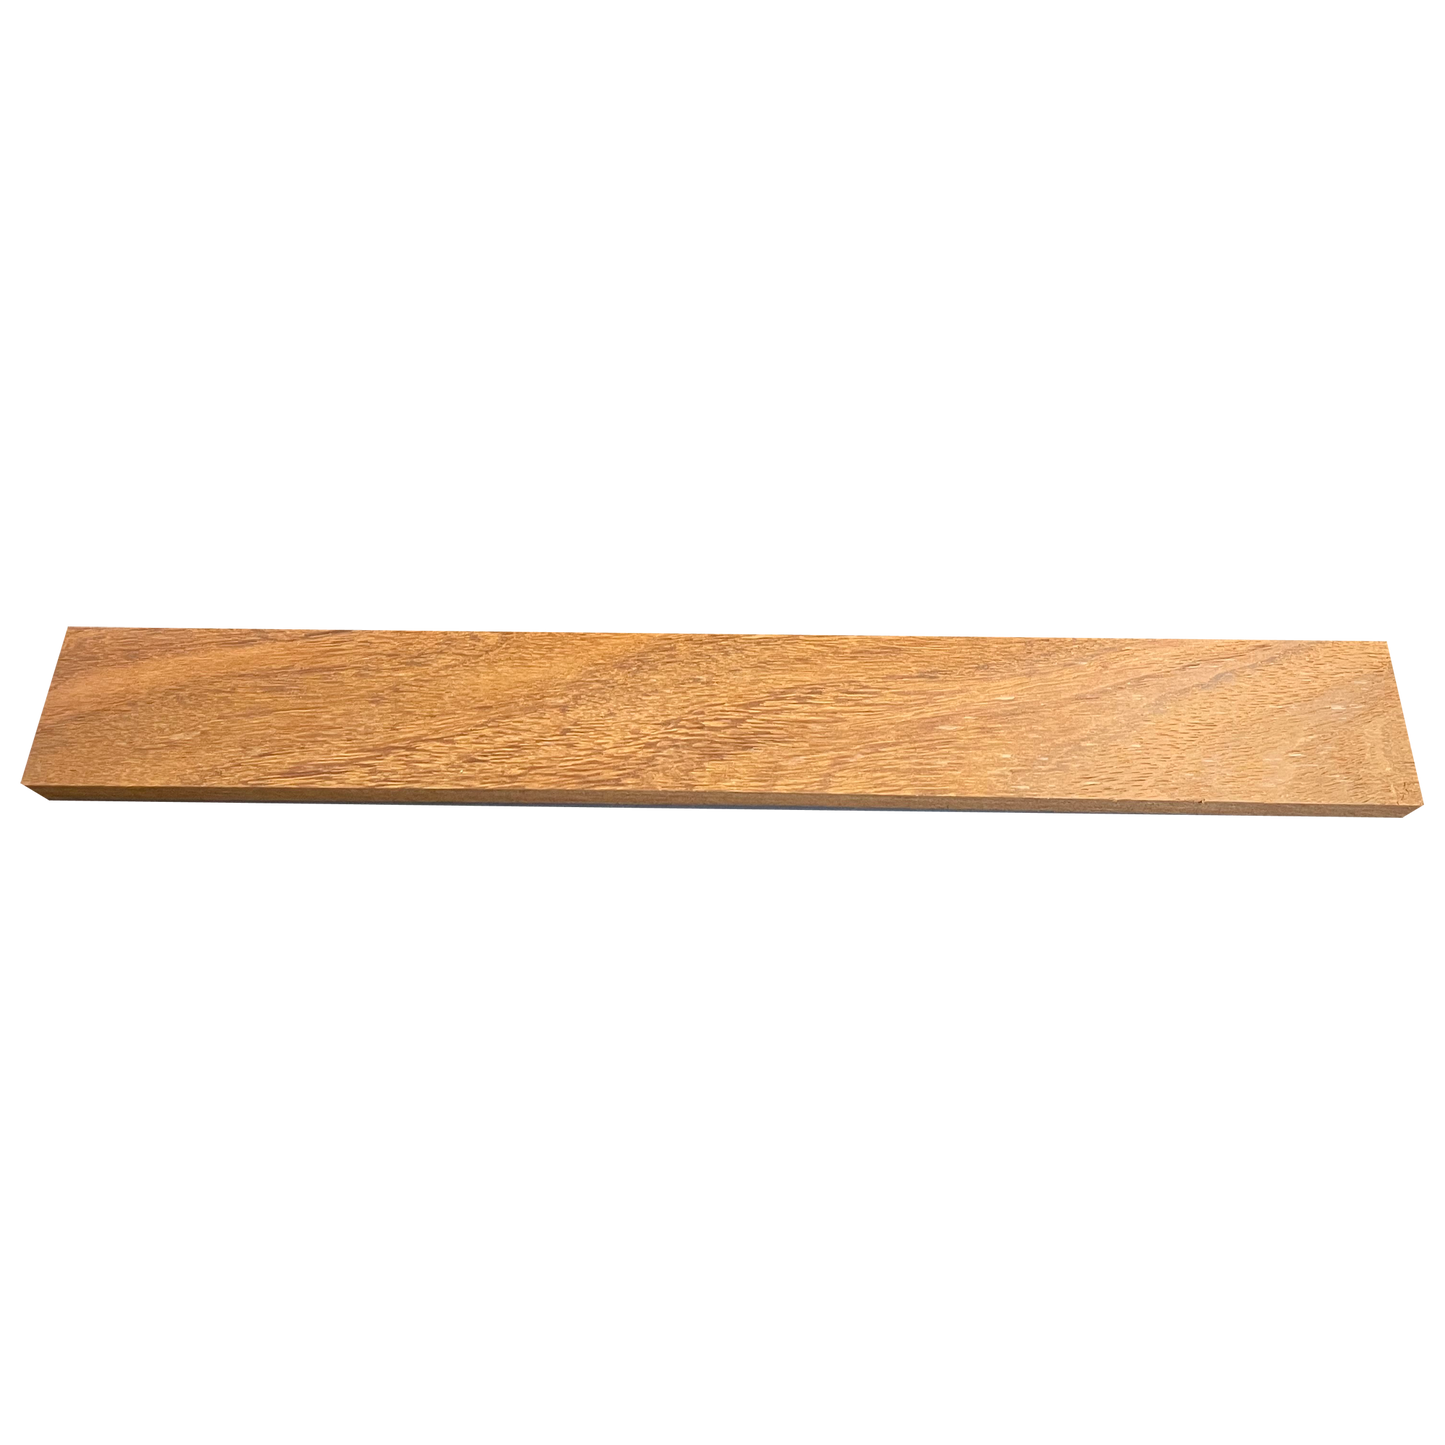 Amarela - Dimensional Lumber